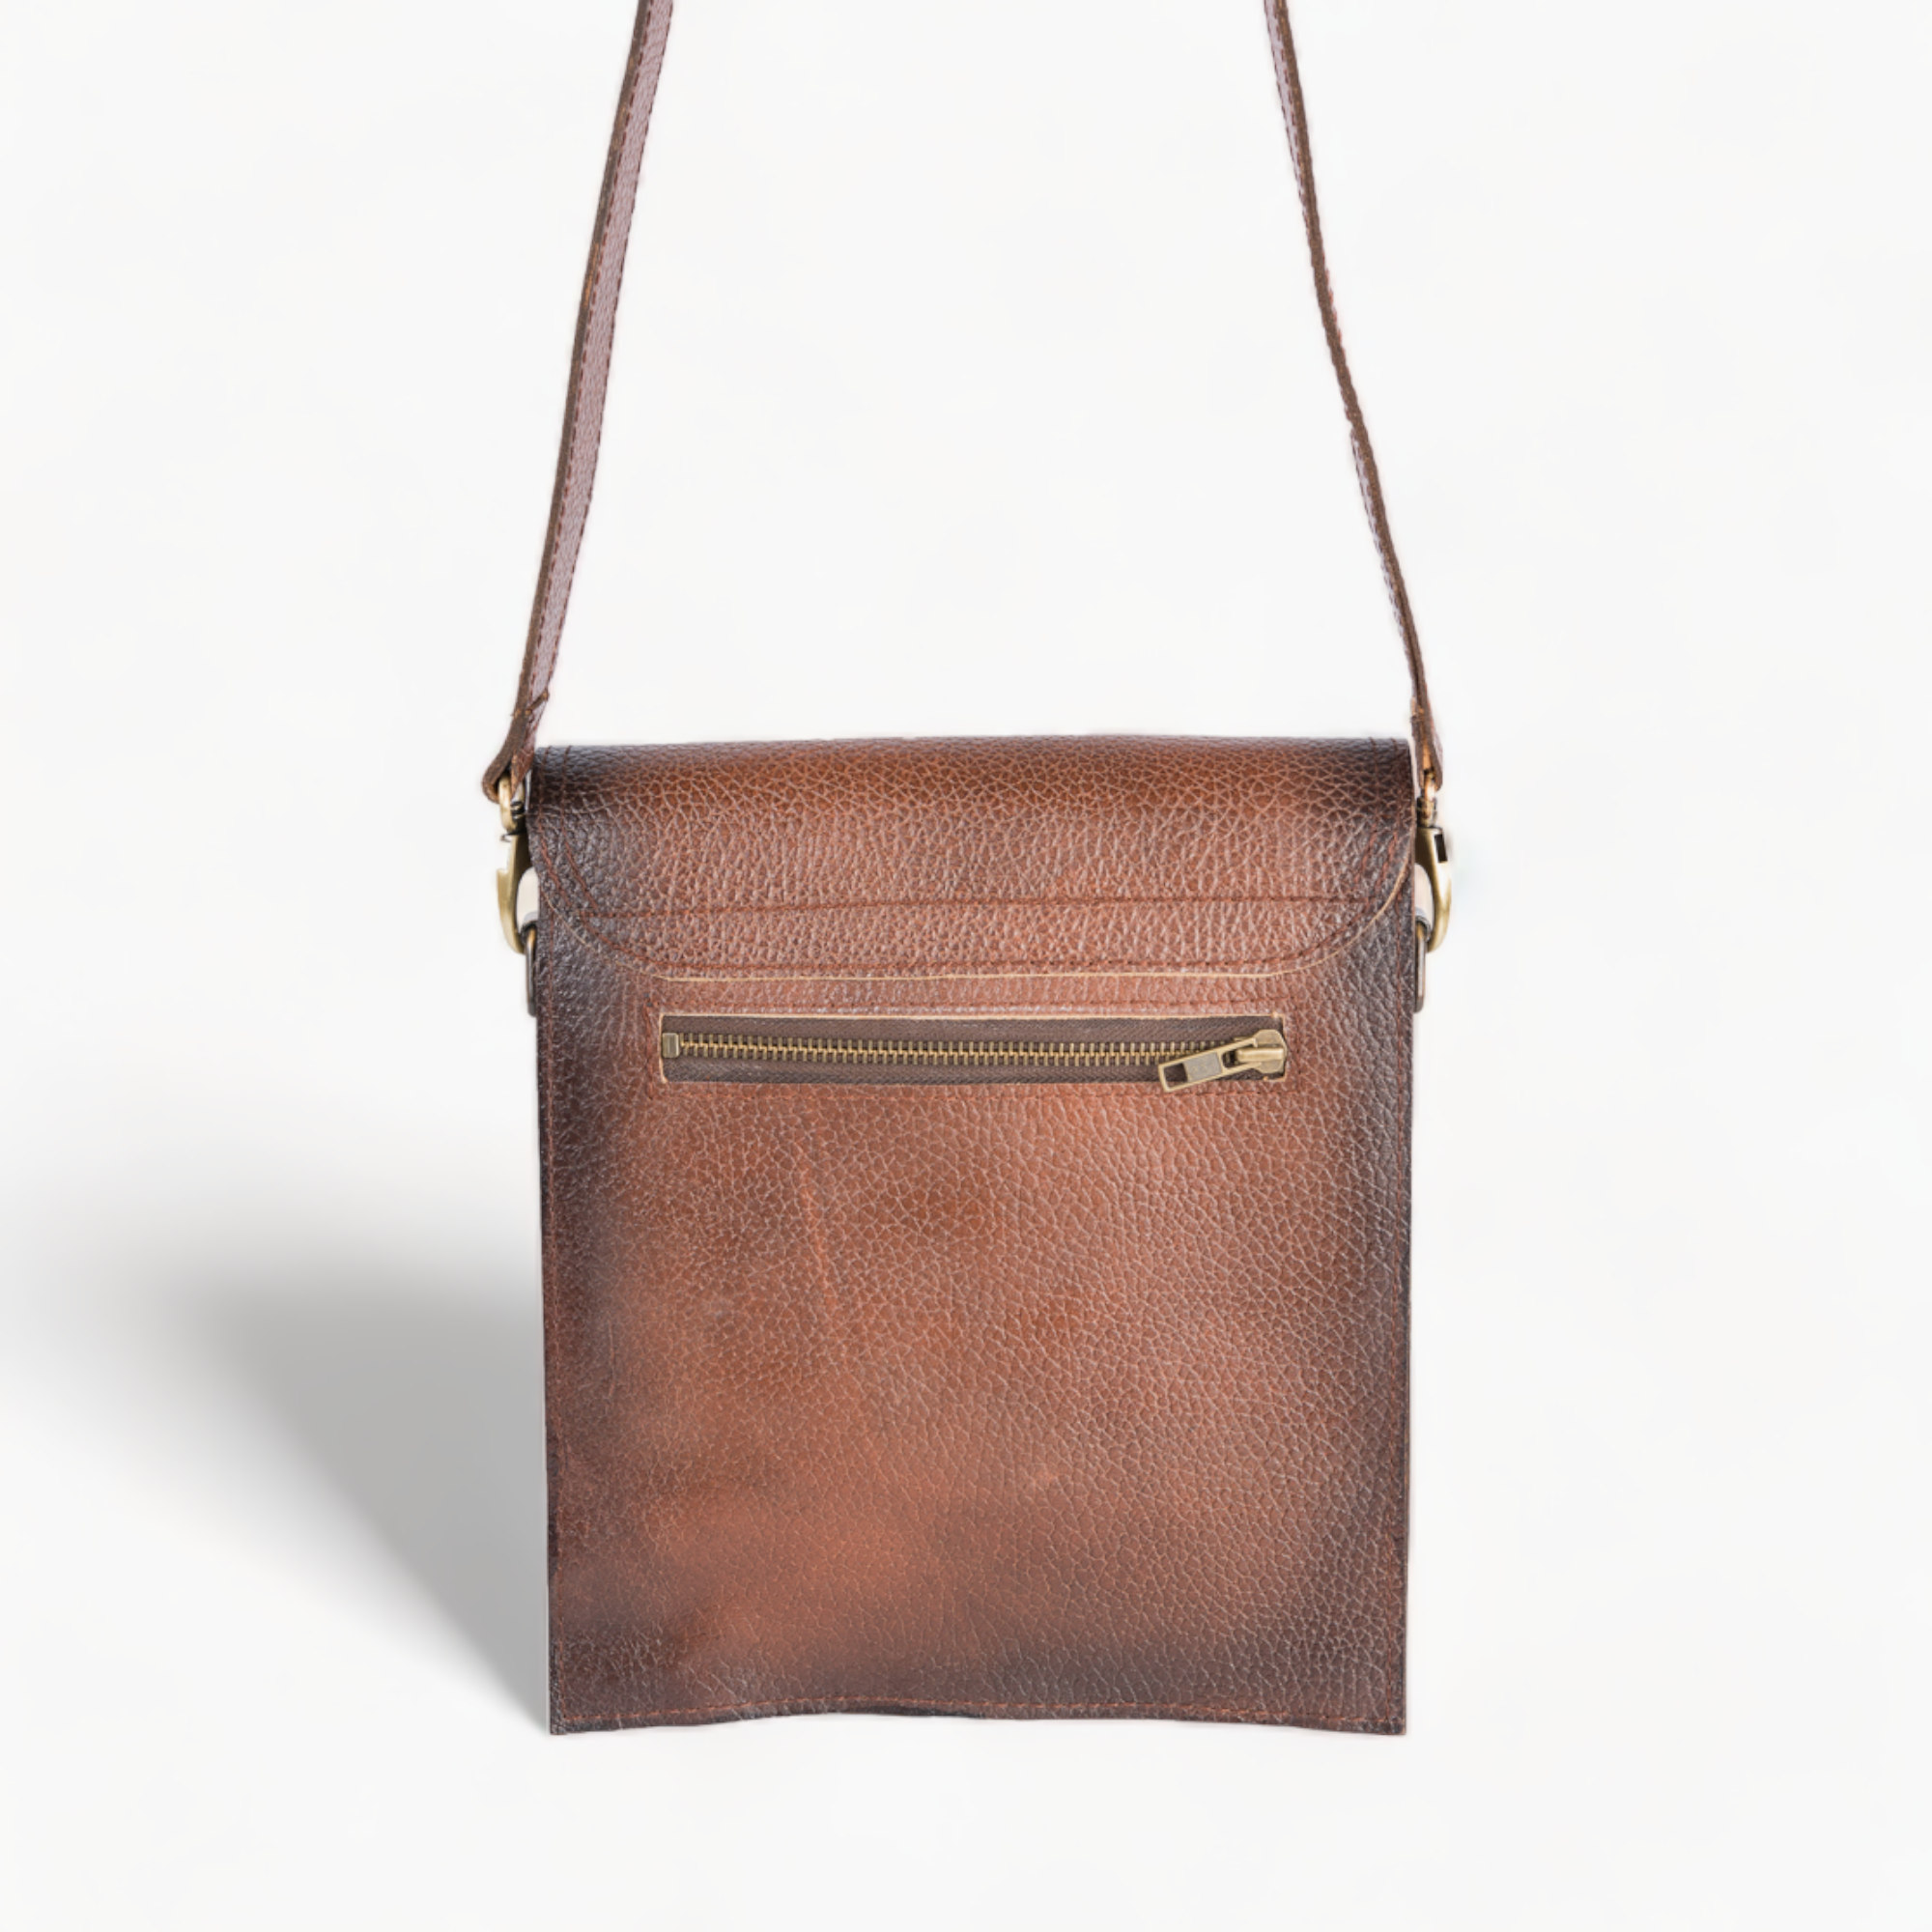 Leather shoulder bag - cross-body bag in brown color. 